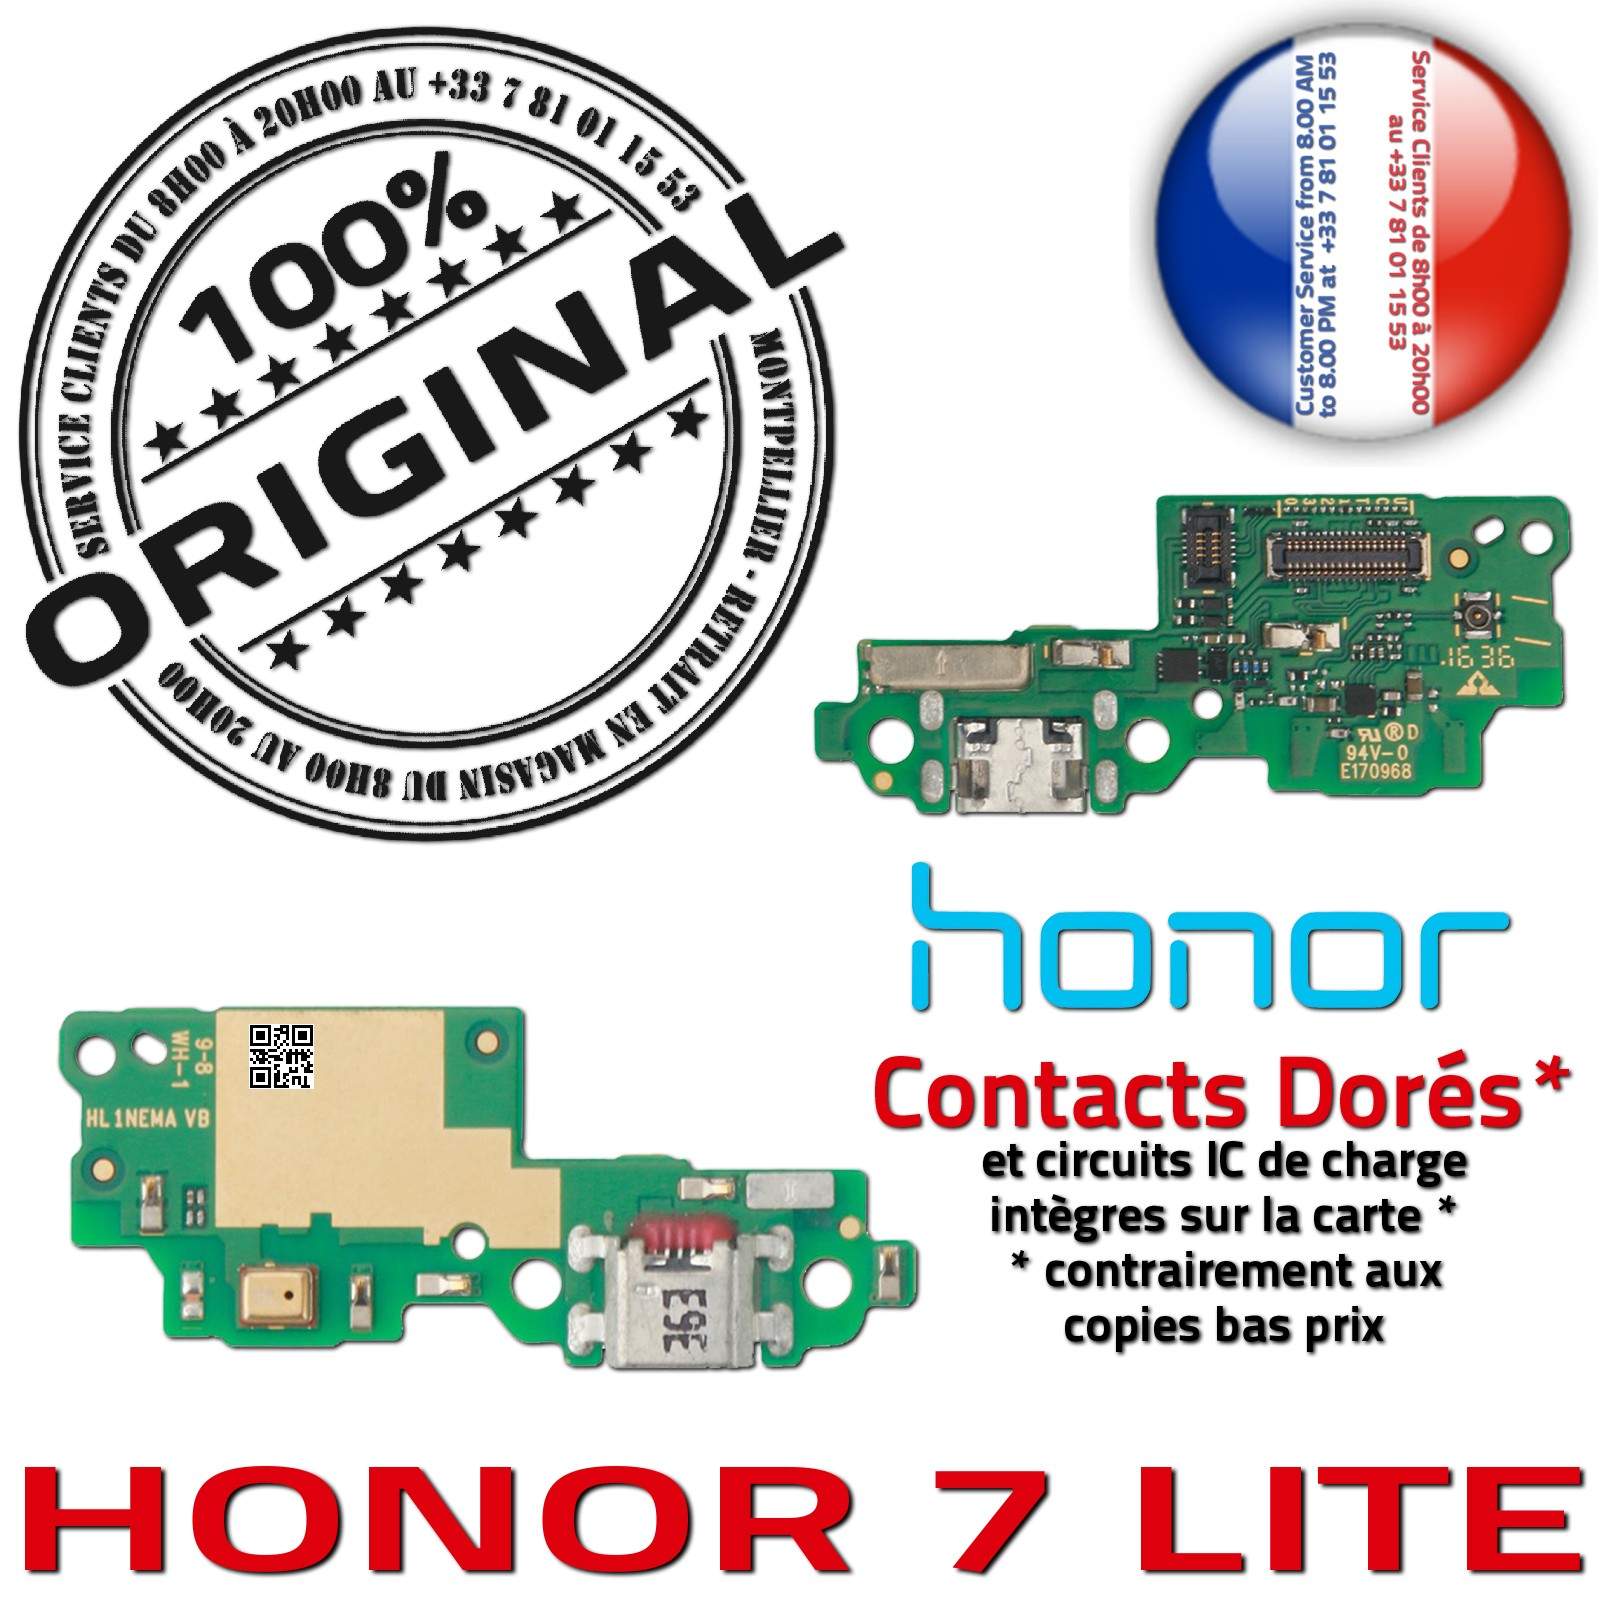 Honor 7 LITE Connecteur de Charge ORIGINAL Prise Chargeur MicroUSB Nappe OFFICIELLE Qualité Microphone Antenne RESEAU Câble JACK